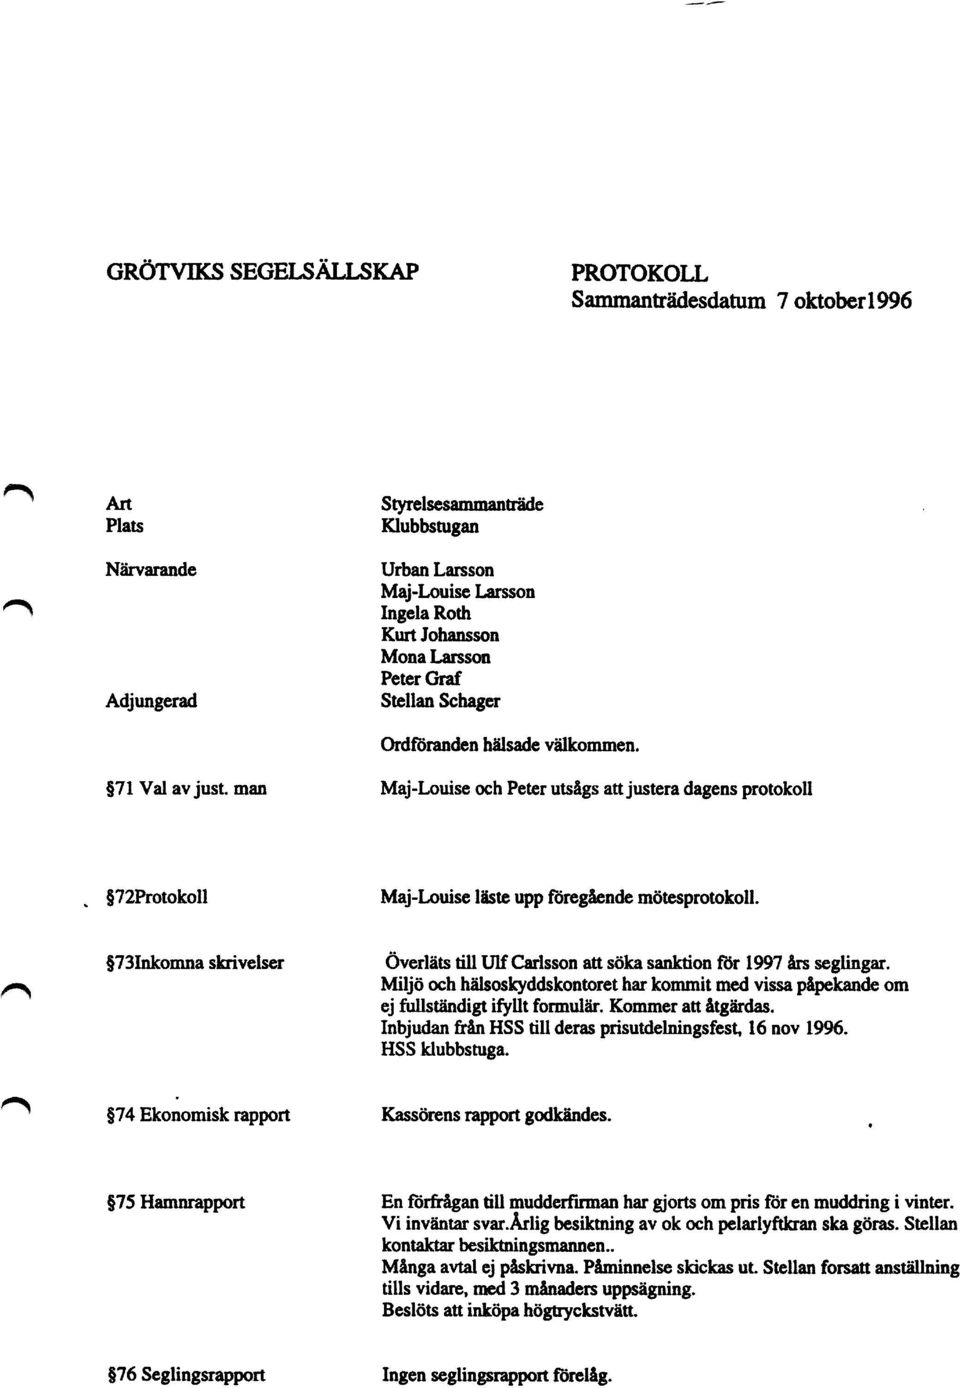 $731nkomna skrivelser Överläts till Ulf Carlsson att söka sanktion för 1997 års seglingar. Miljö och hälsoskyddskontoret har kommit med vissa påpekande om ej fullständigt ifyllt formulär.